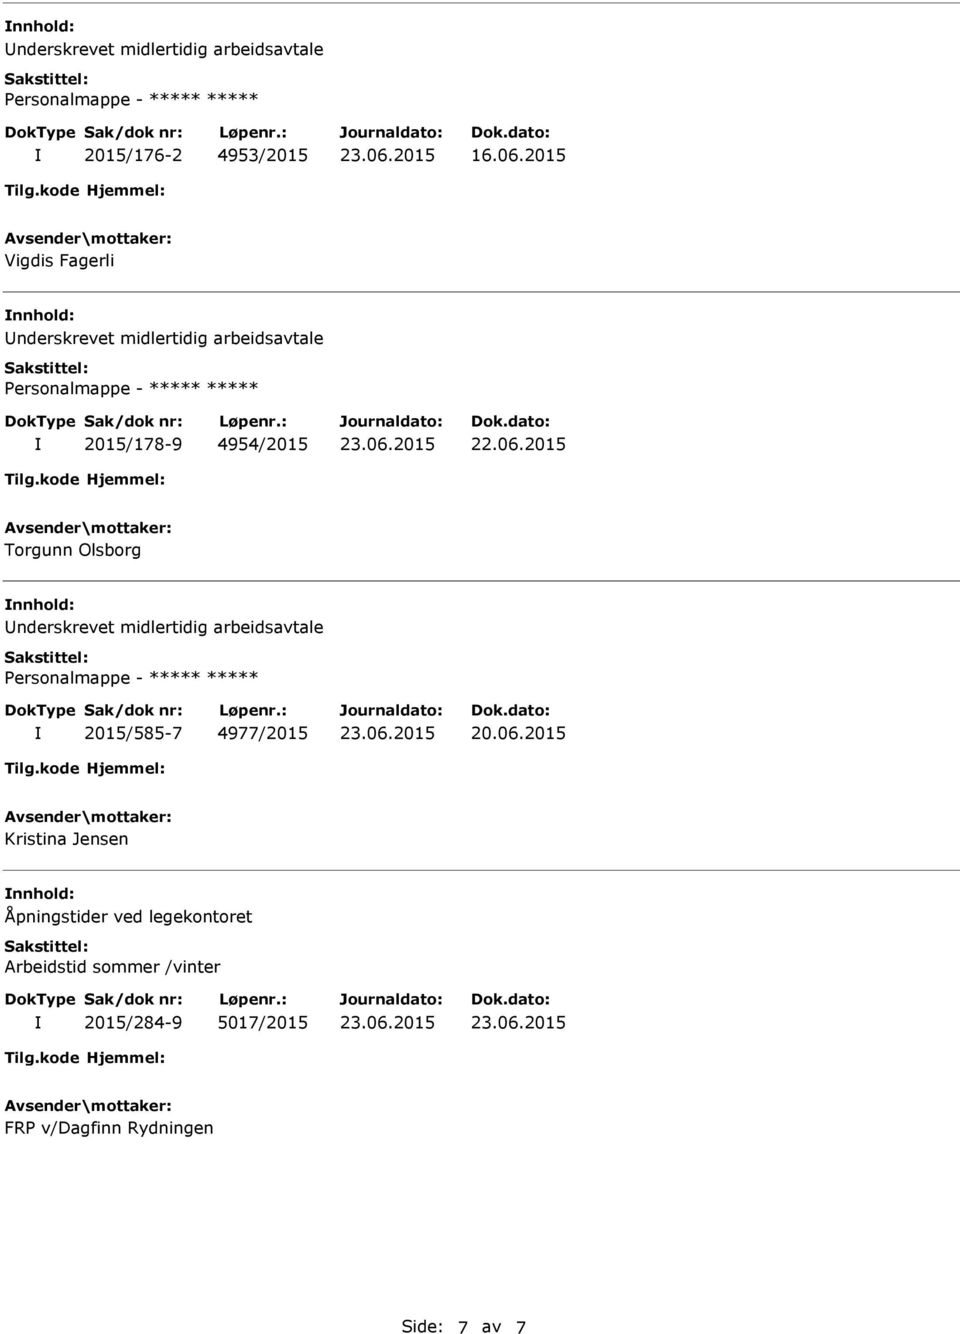 Olsborg nderskrevet midlertidig arbeidsavtale 2015/585-7 4977/2015 20.06.